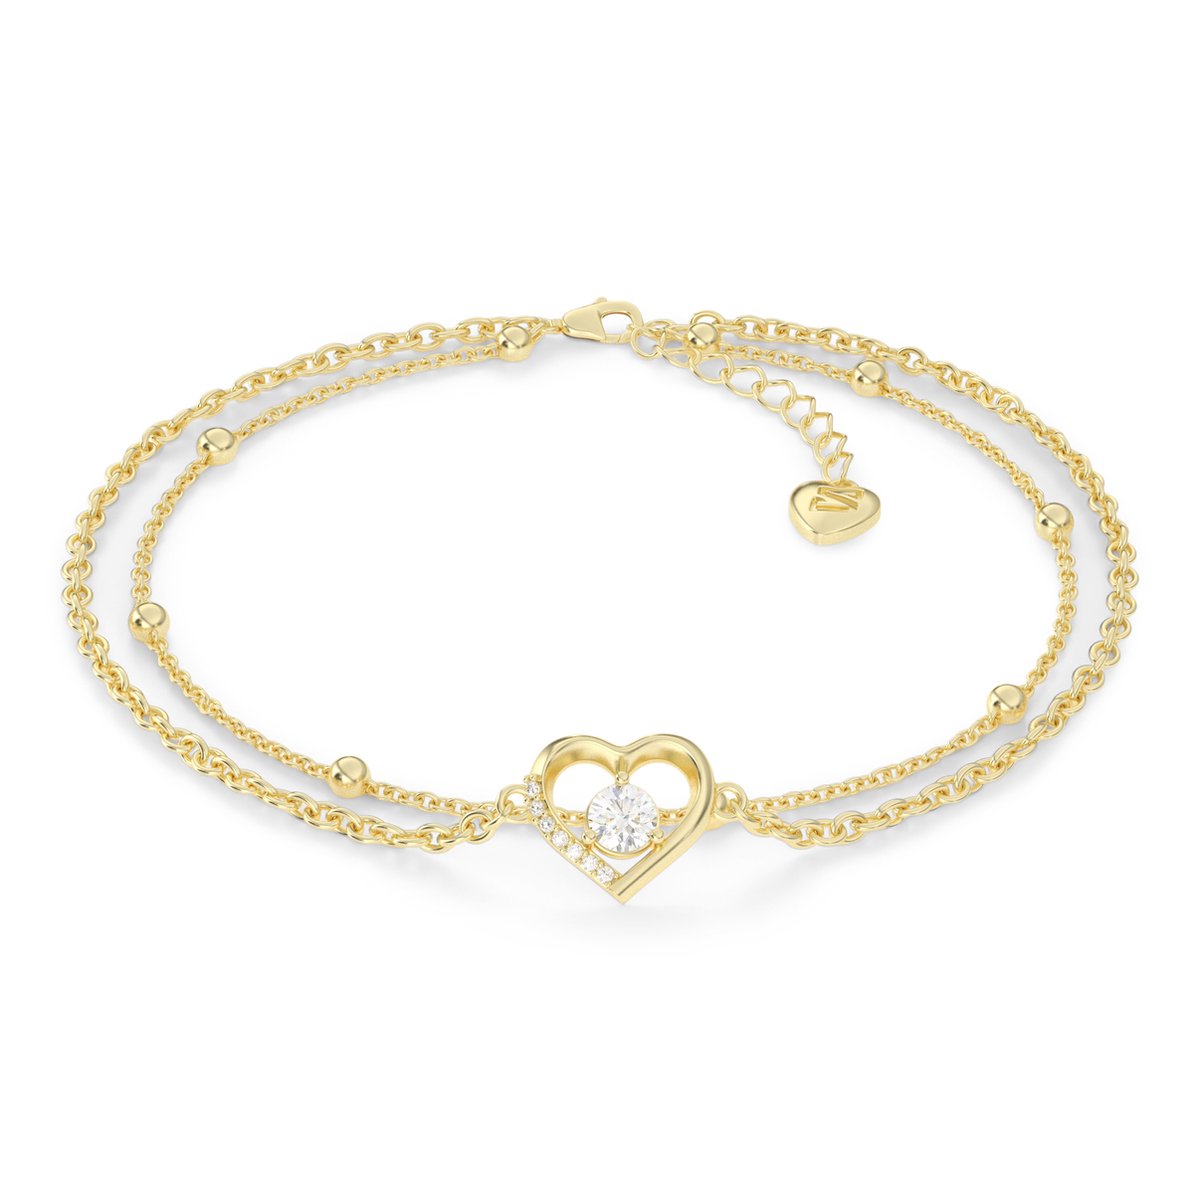 SERASAR Zilveren Dames Enkelbandje [Heart] met Hartsymbool, Goud, 18-Karaats Gouden Sieraden